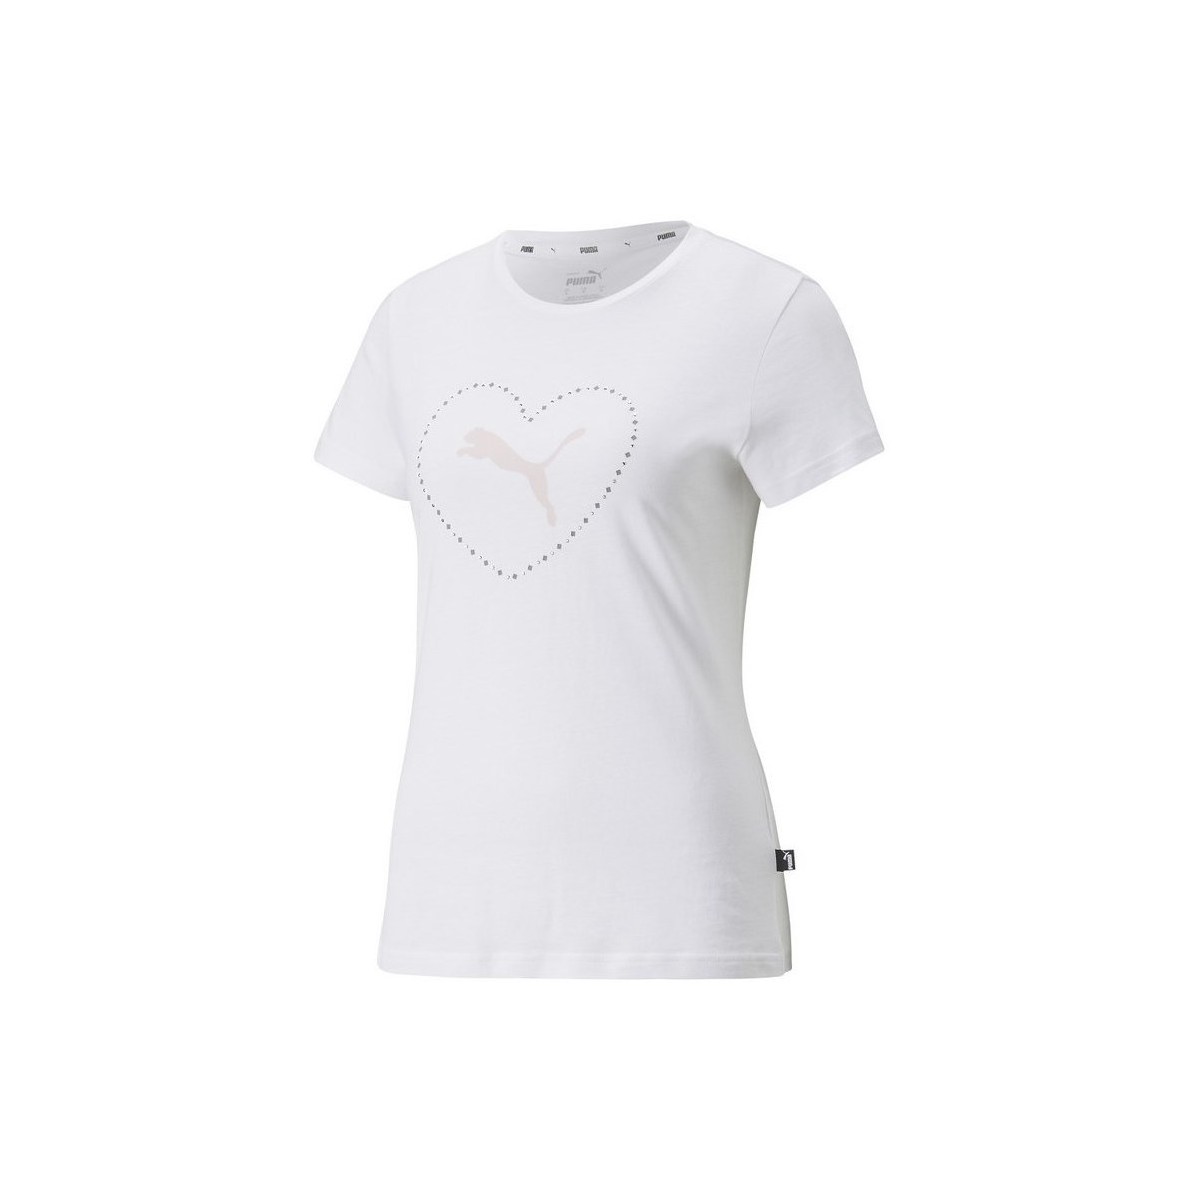 Vêtements Femme T-shirts manches courtes Puma Valentine S Day Graphic Blanc